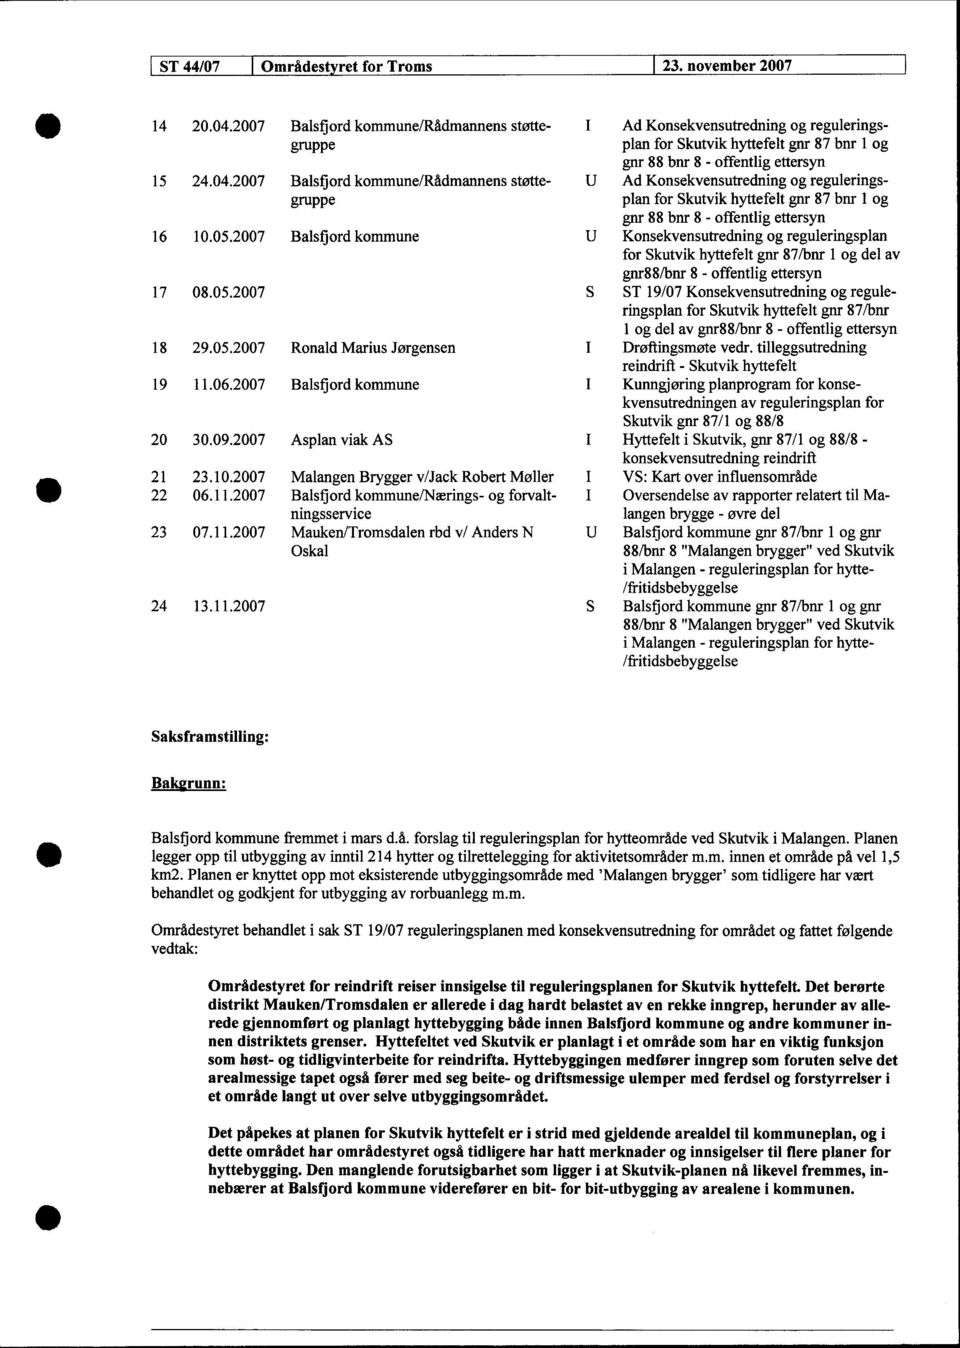 27 Balsfjord kommune U Konsekvensutredning og reguleringsplan for Skutvik hyttefelt gnr 87/bnr 1 og del av gnr88/bnr 8 - offentlig ettersyn 17 8.5.